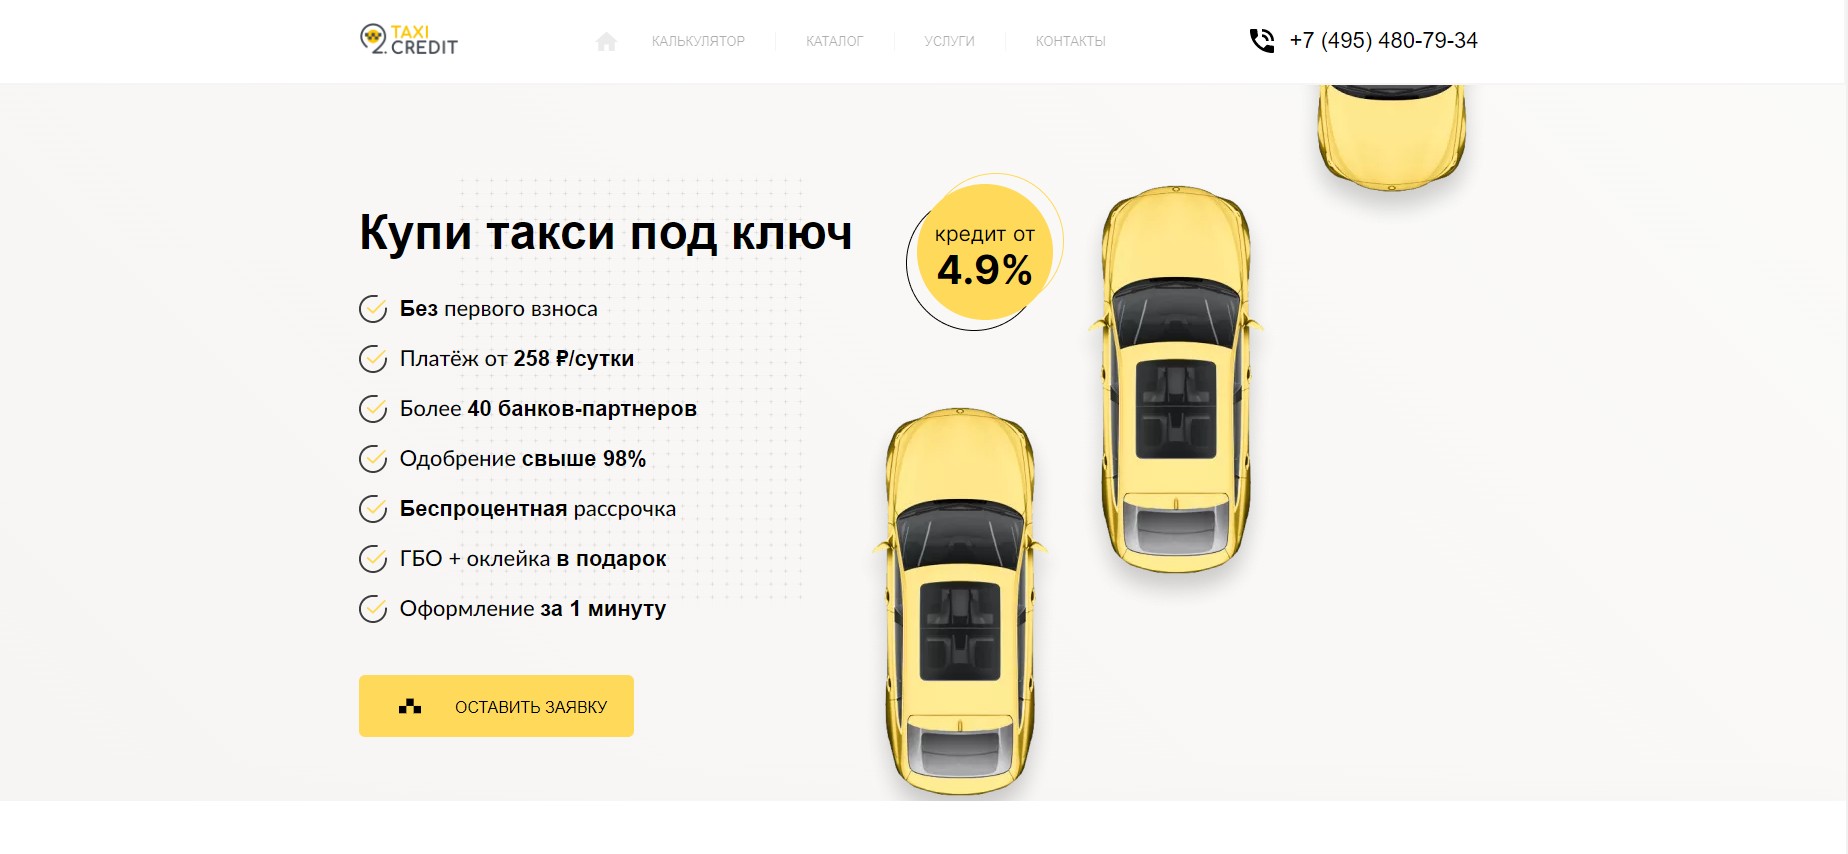 Официальный сайт Taxi credit